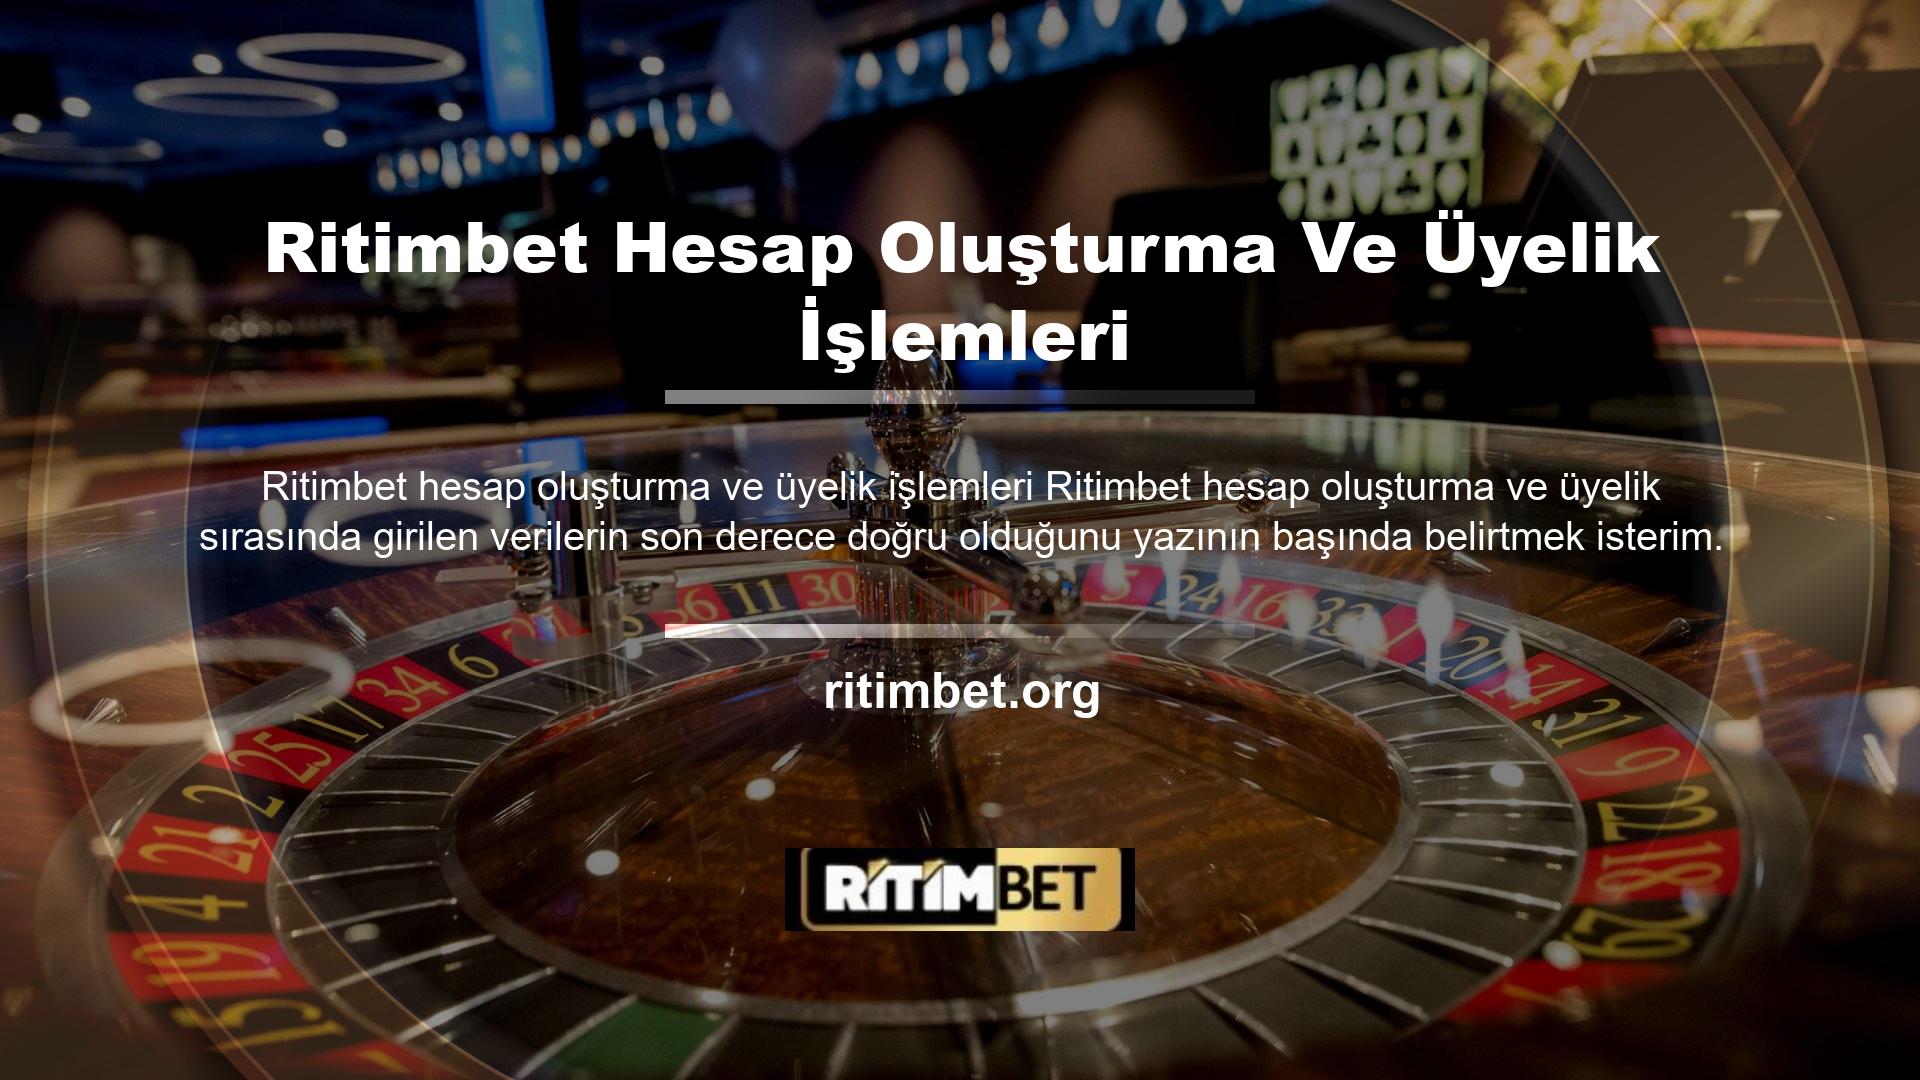 Ritimbet, kurucusunun Avrupa çevrimiçi casino endüstrisinden etkilenmesiyle kökleri Türkiye'de olan güvenilir bir casino sitesi olduğunu kanıtladı